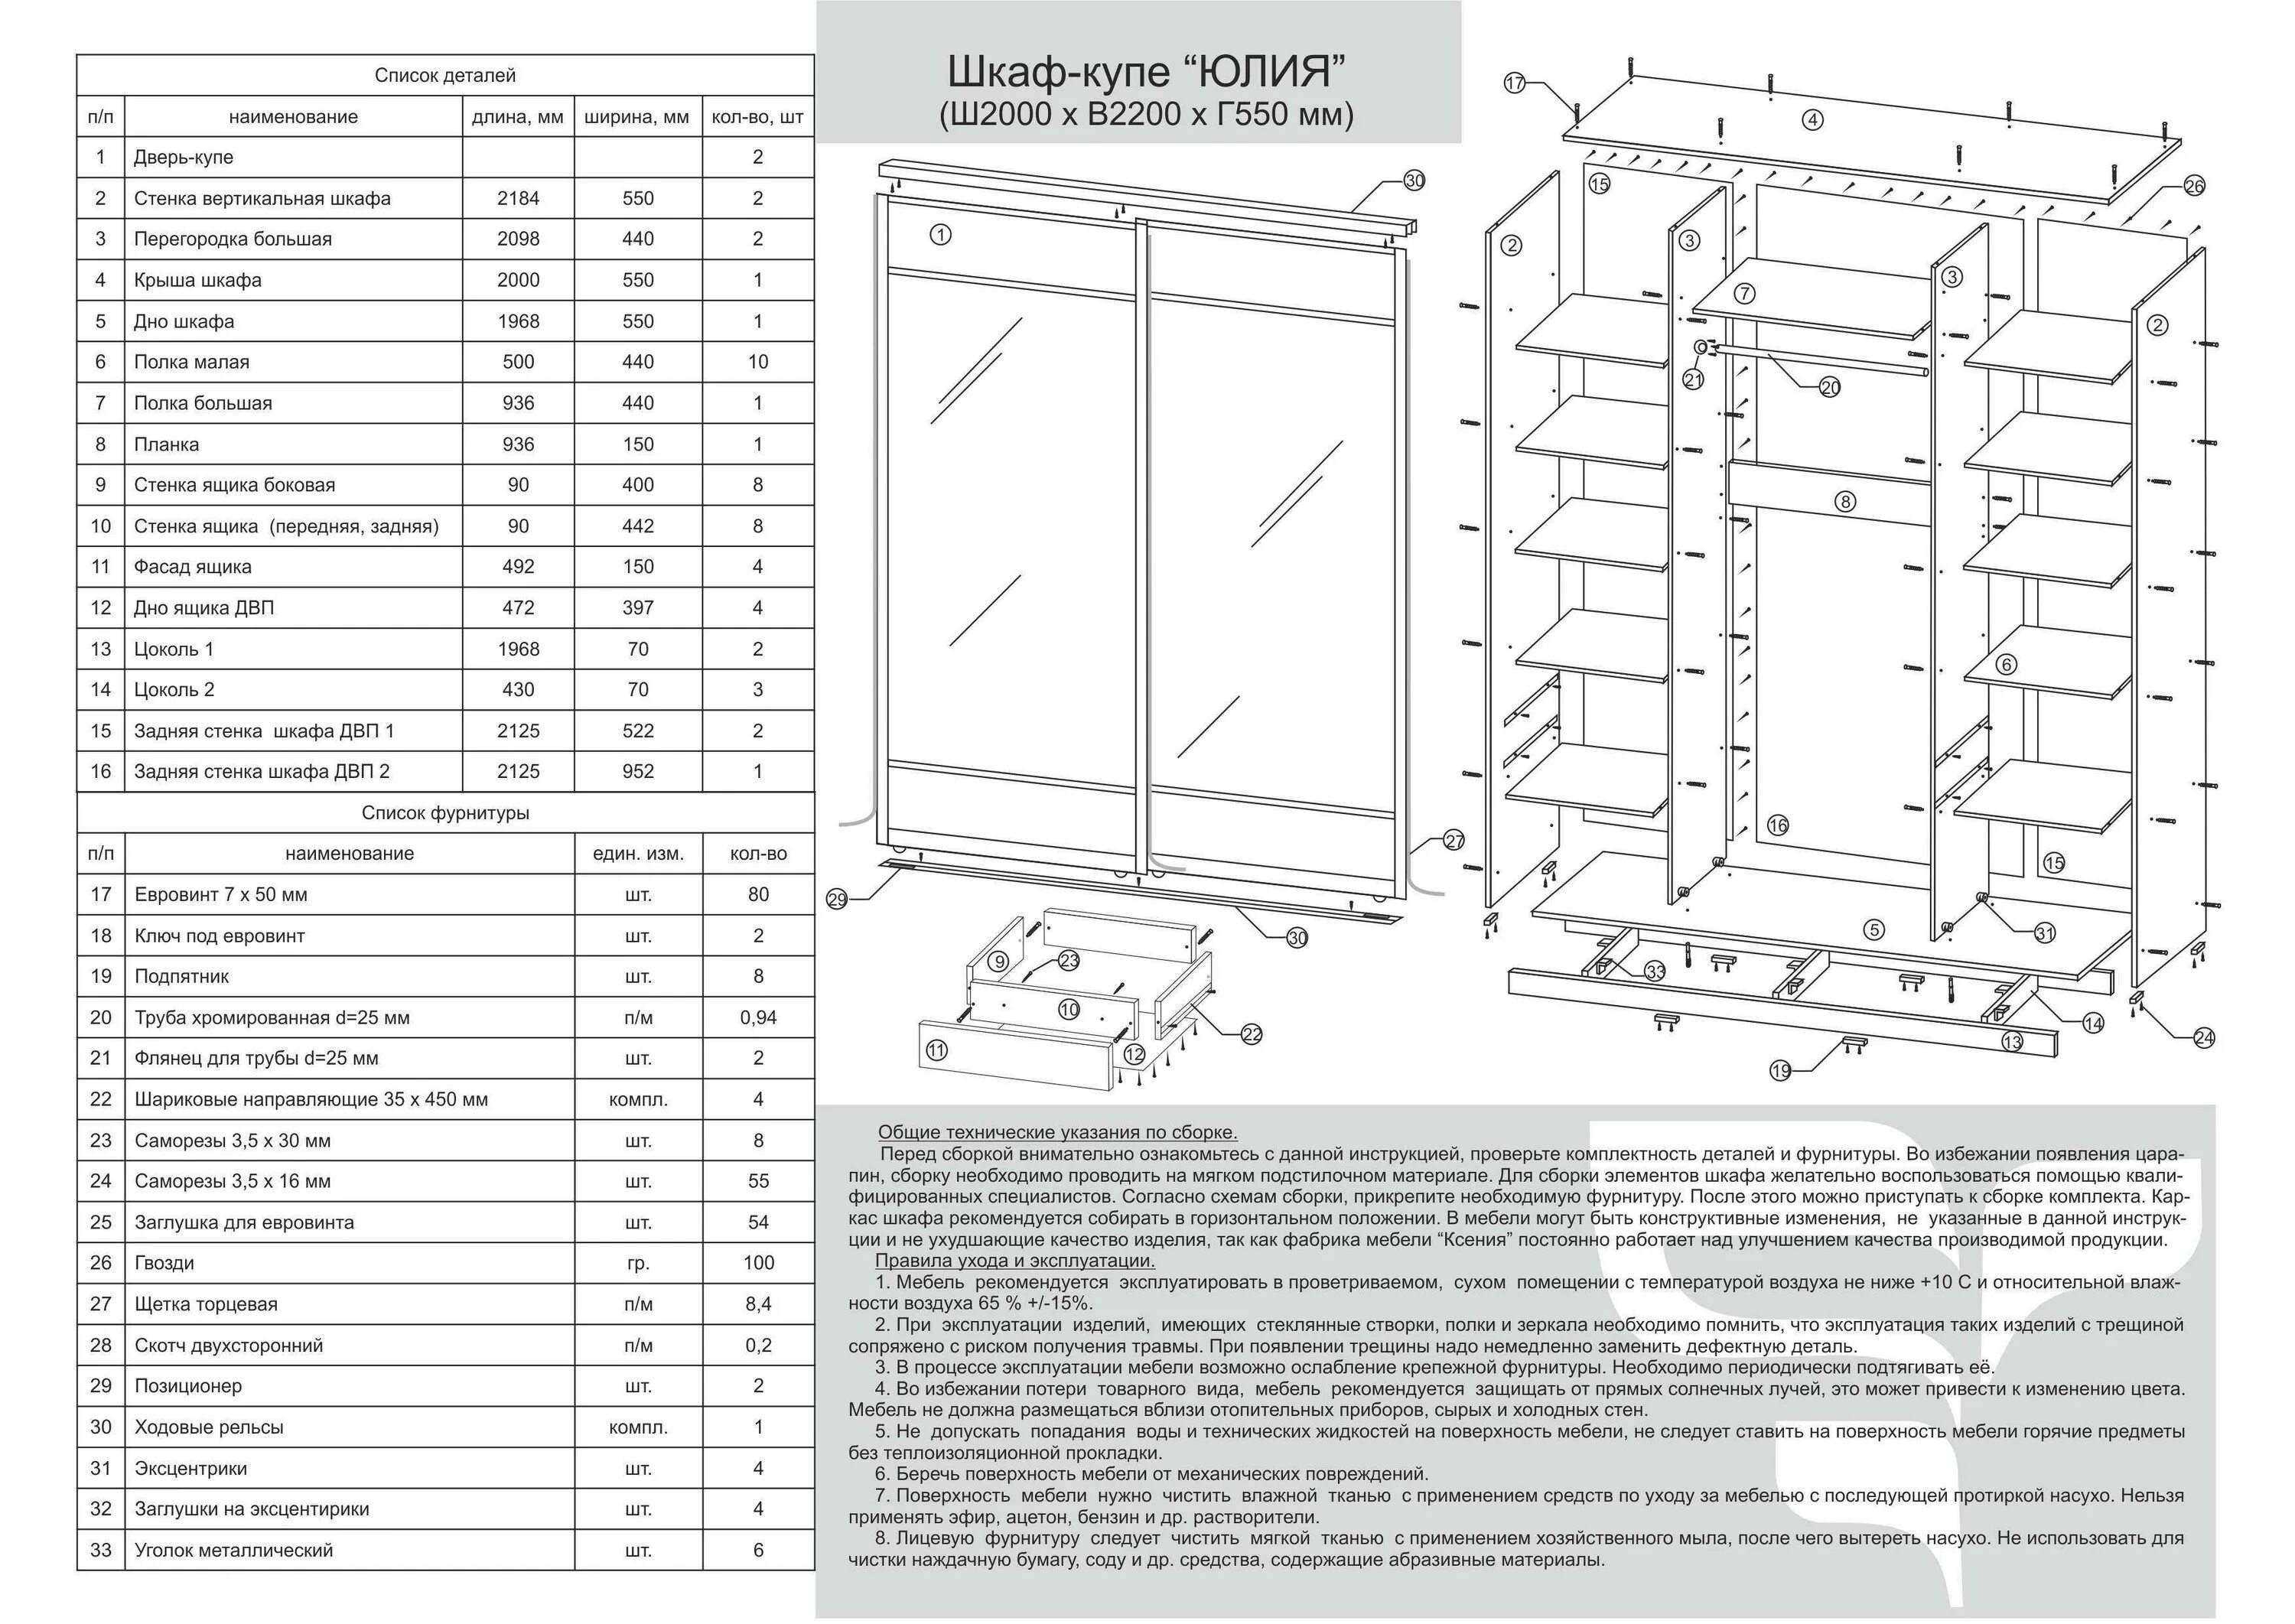 Шкаф-купе Версаль с 2-мя дверями схема сборки. Версаль 5 схема сборки шкаф. Шкаф Прайм е1 схема сборки.